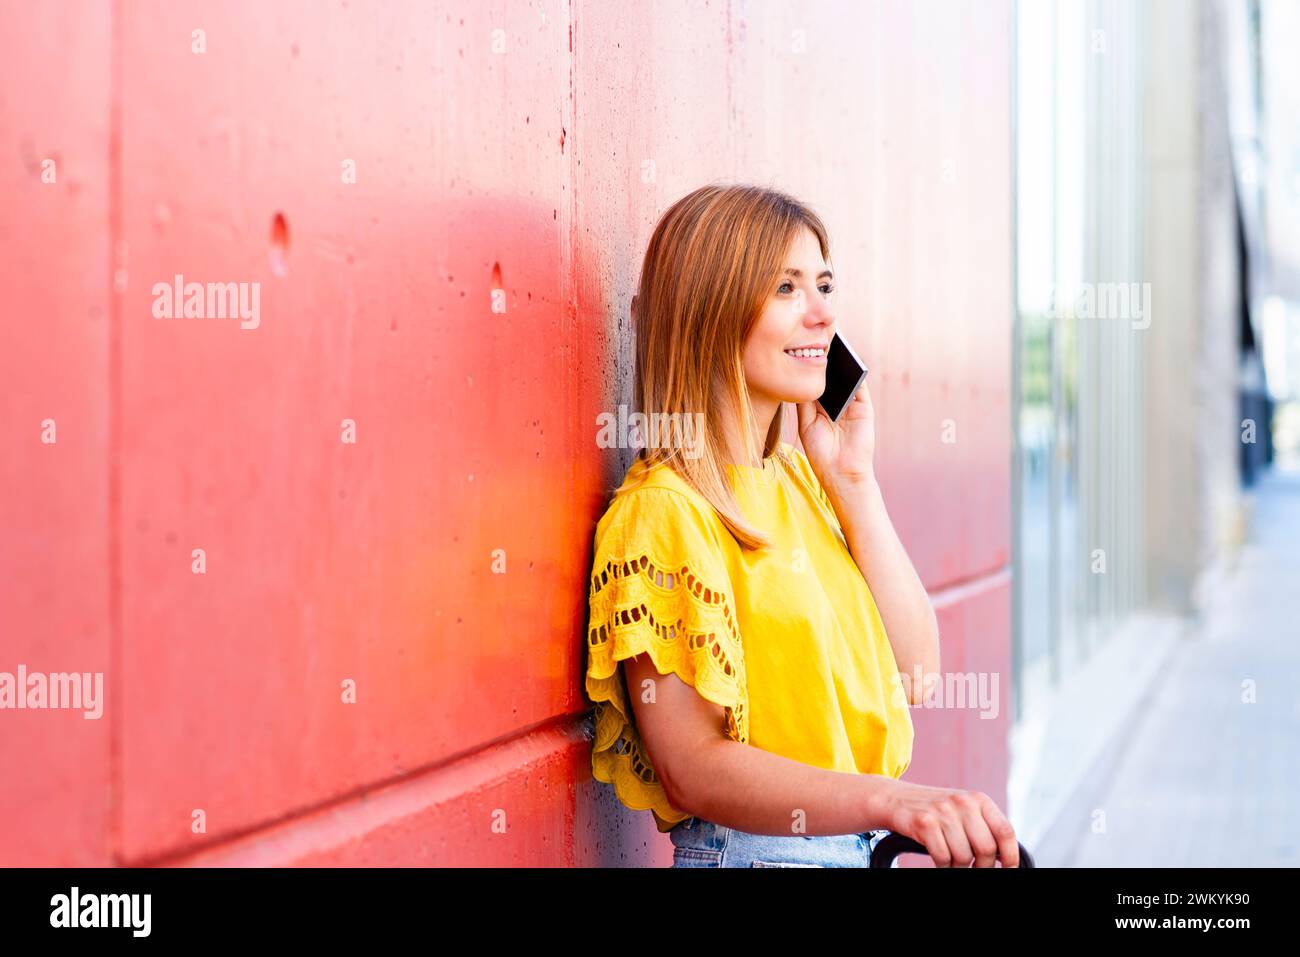 Eine junge Frau lehnt sich lässig an eine strukturierte rote Wand, tief im Gespräch mit ihrem Smartphone. Ihre hellgelbe Bluse und ihr entspanntes Auftreten geben es Stockfoto